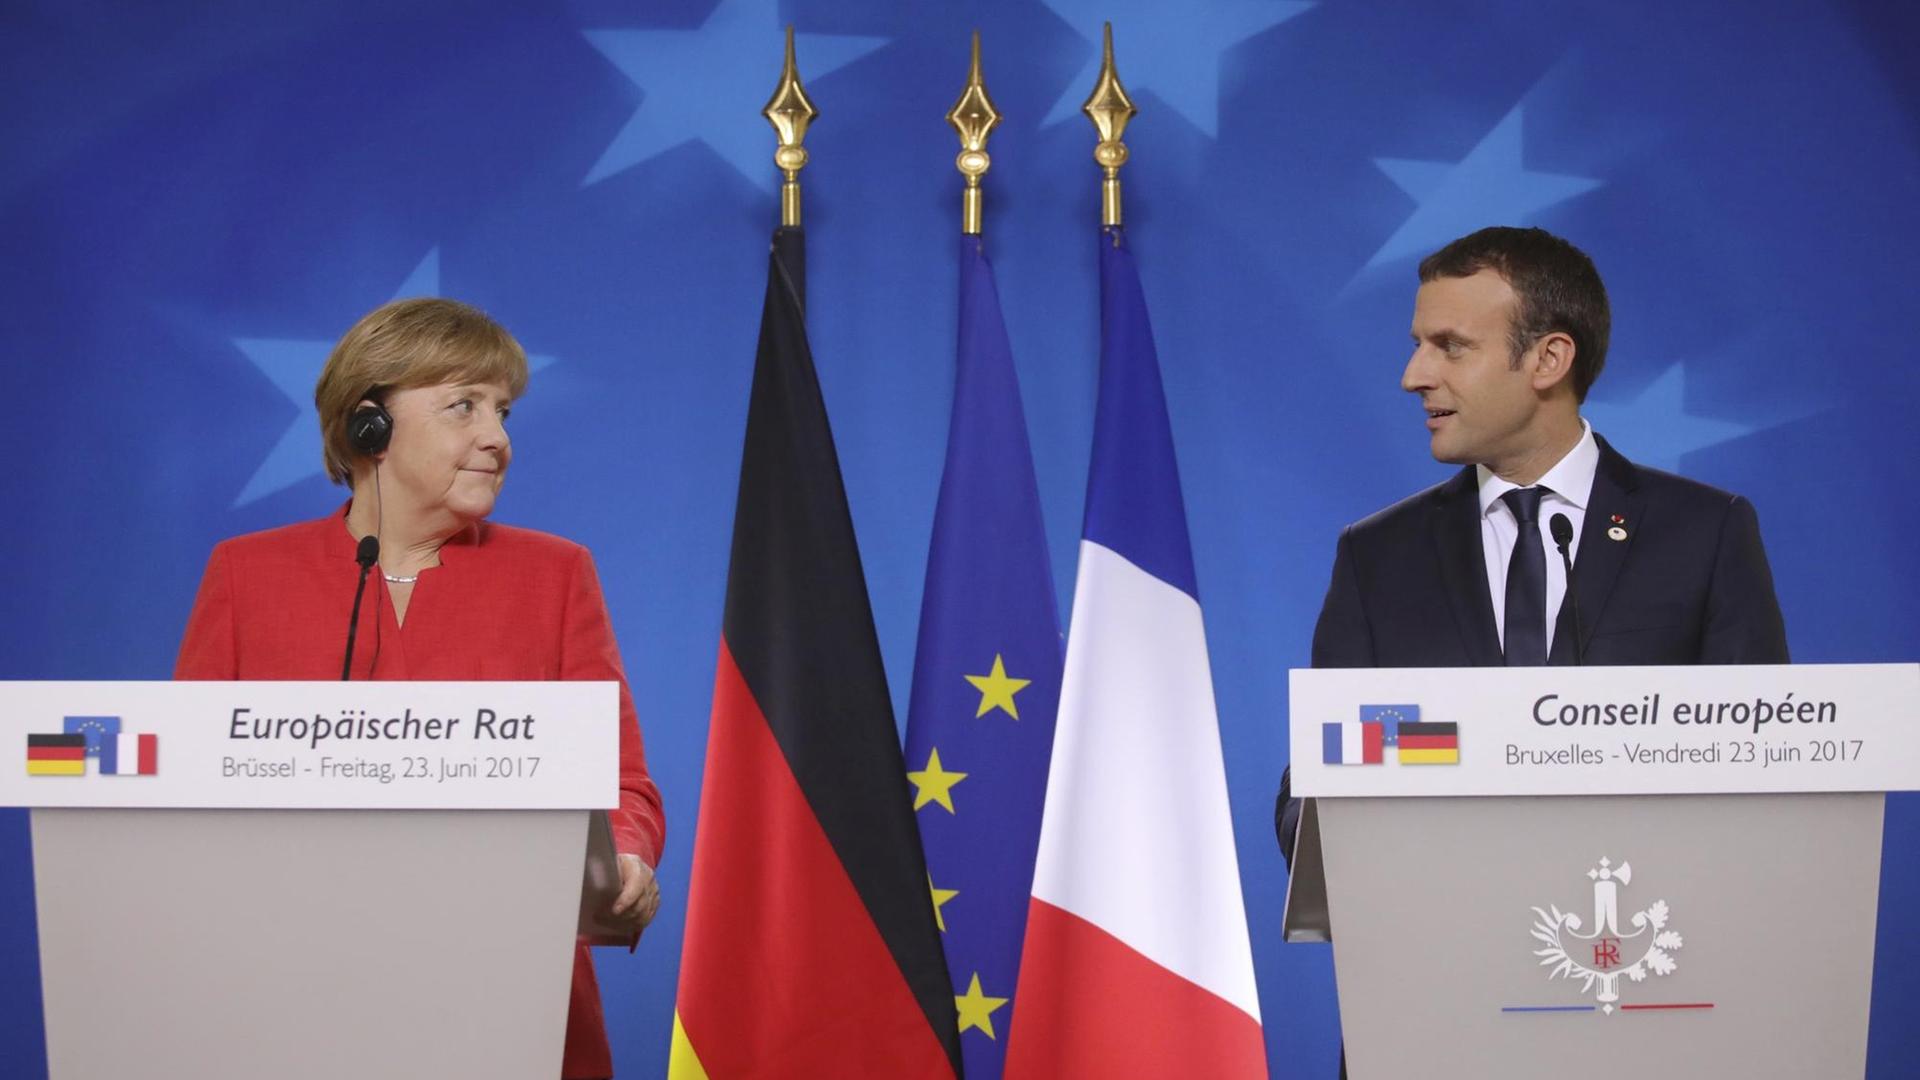 Bundeskanzlerin Angela Merkel und Frankreichs Präsident Emmanuel Macron sprechen nach dem EU-Gipfel in Brüssel auf einer gemeinsamen Pressekonferenz.